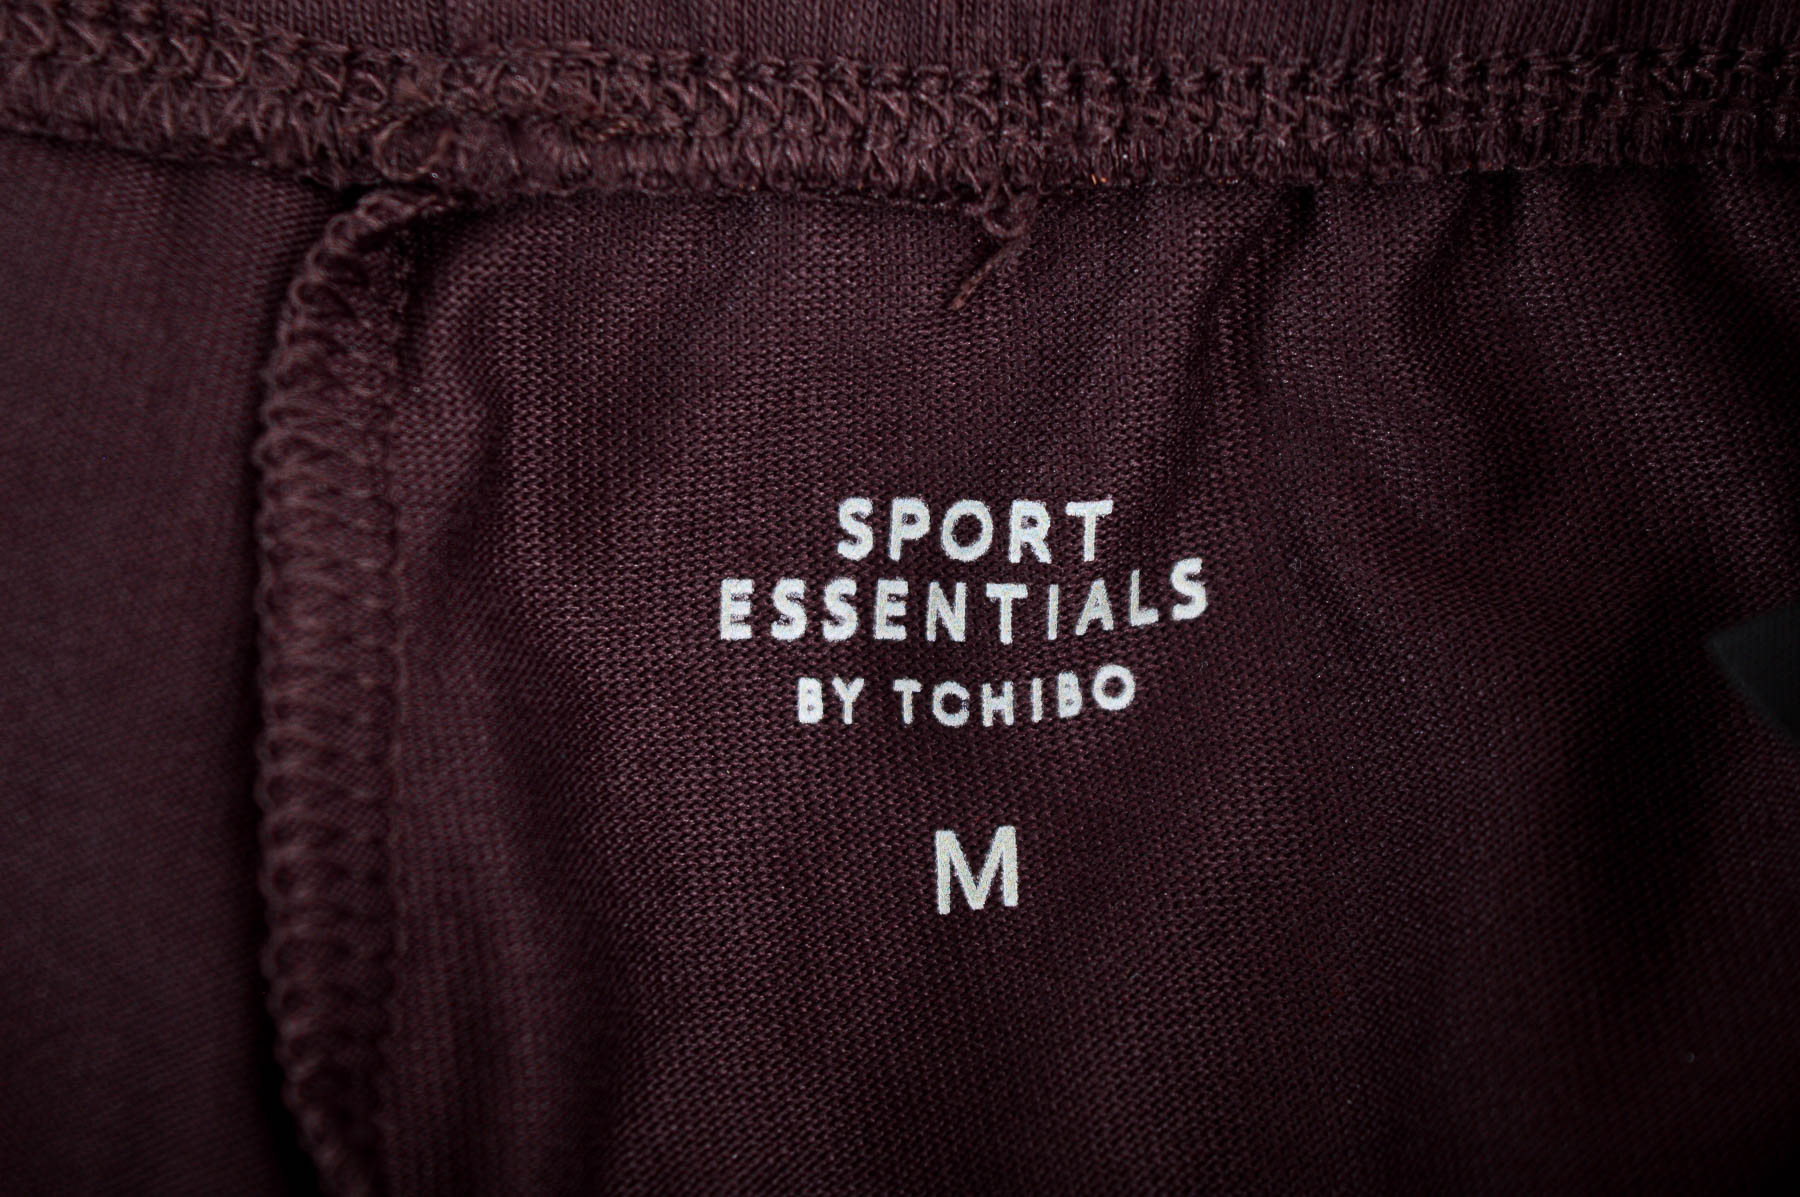 Legginsy damskie - Sport Essentials by Tchibo - 2